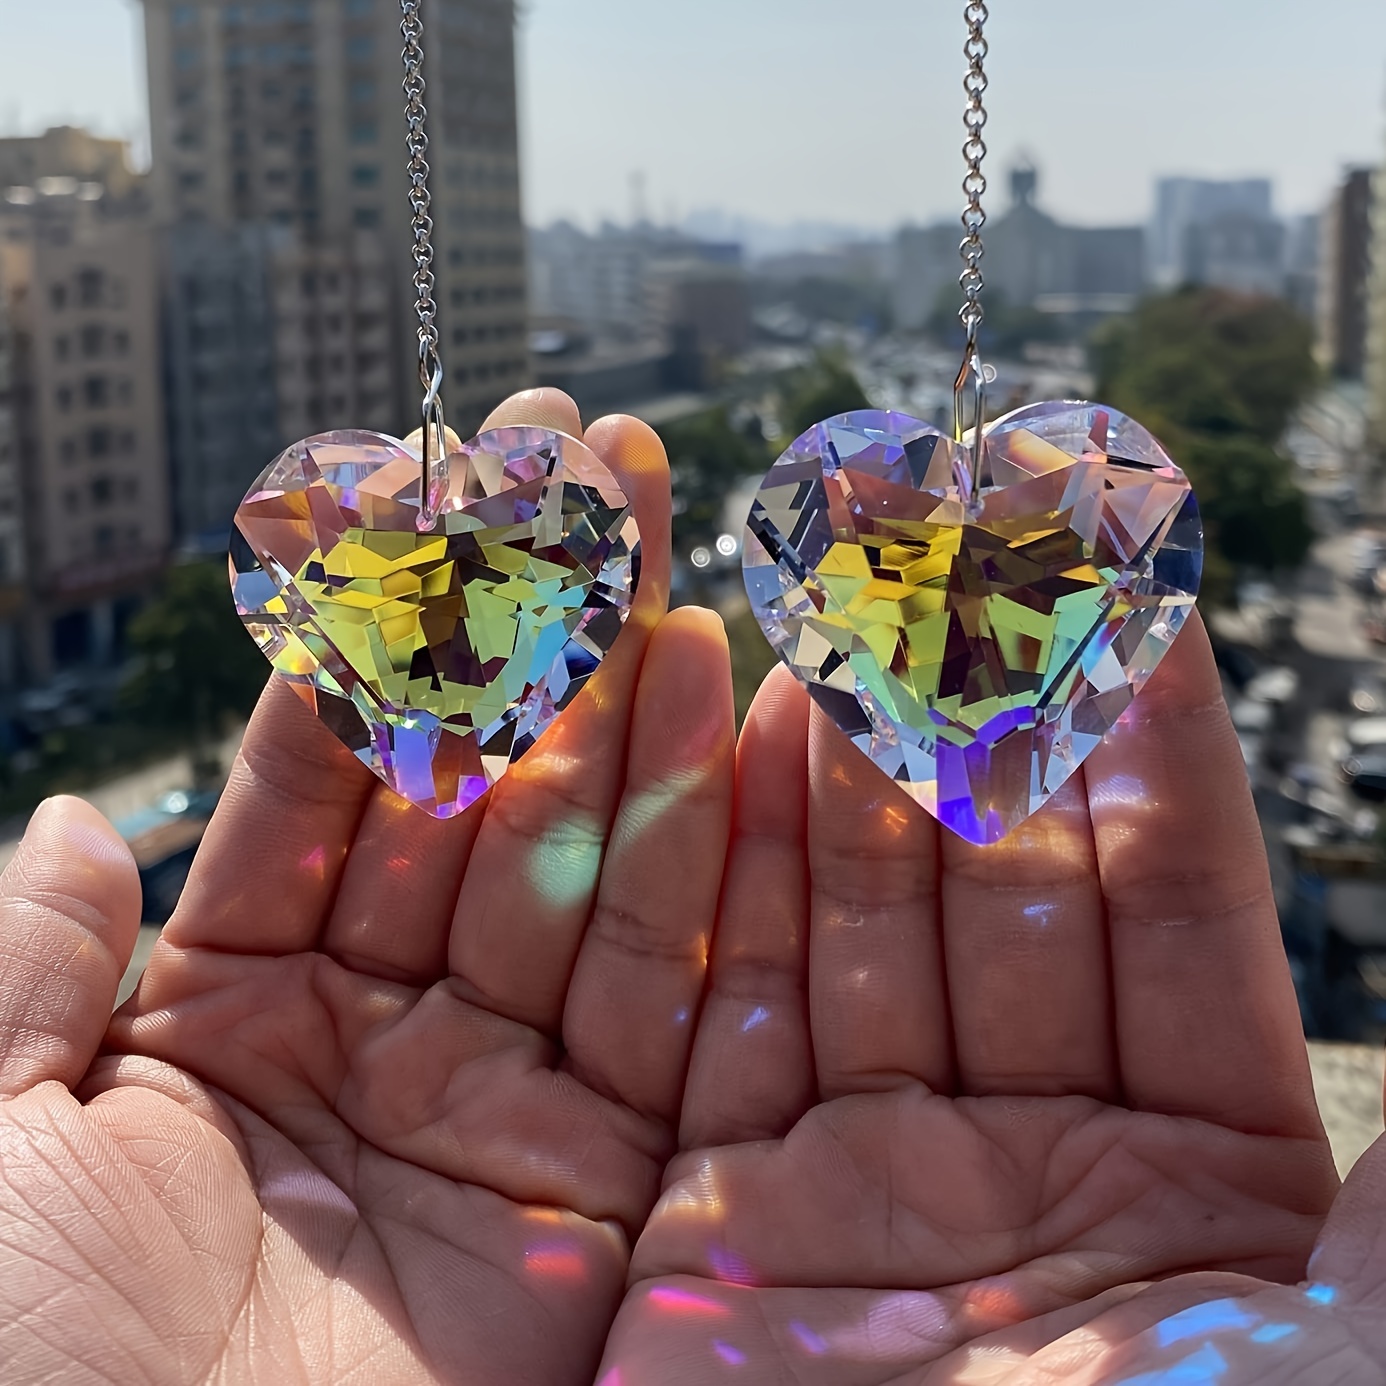 

Lot de 2 suncatchers en cristal en forme de cœur, fabricant d'arc-en-ciel pour fenêtre, suspendu aux fenêtres avec prisme en verre pour balcon, cuisine, jardin